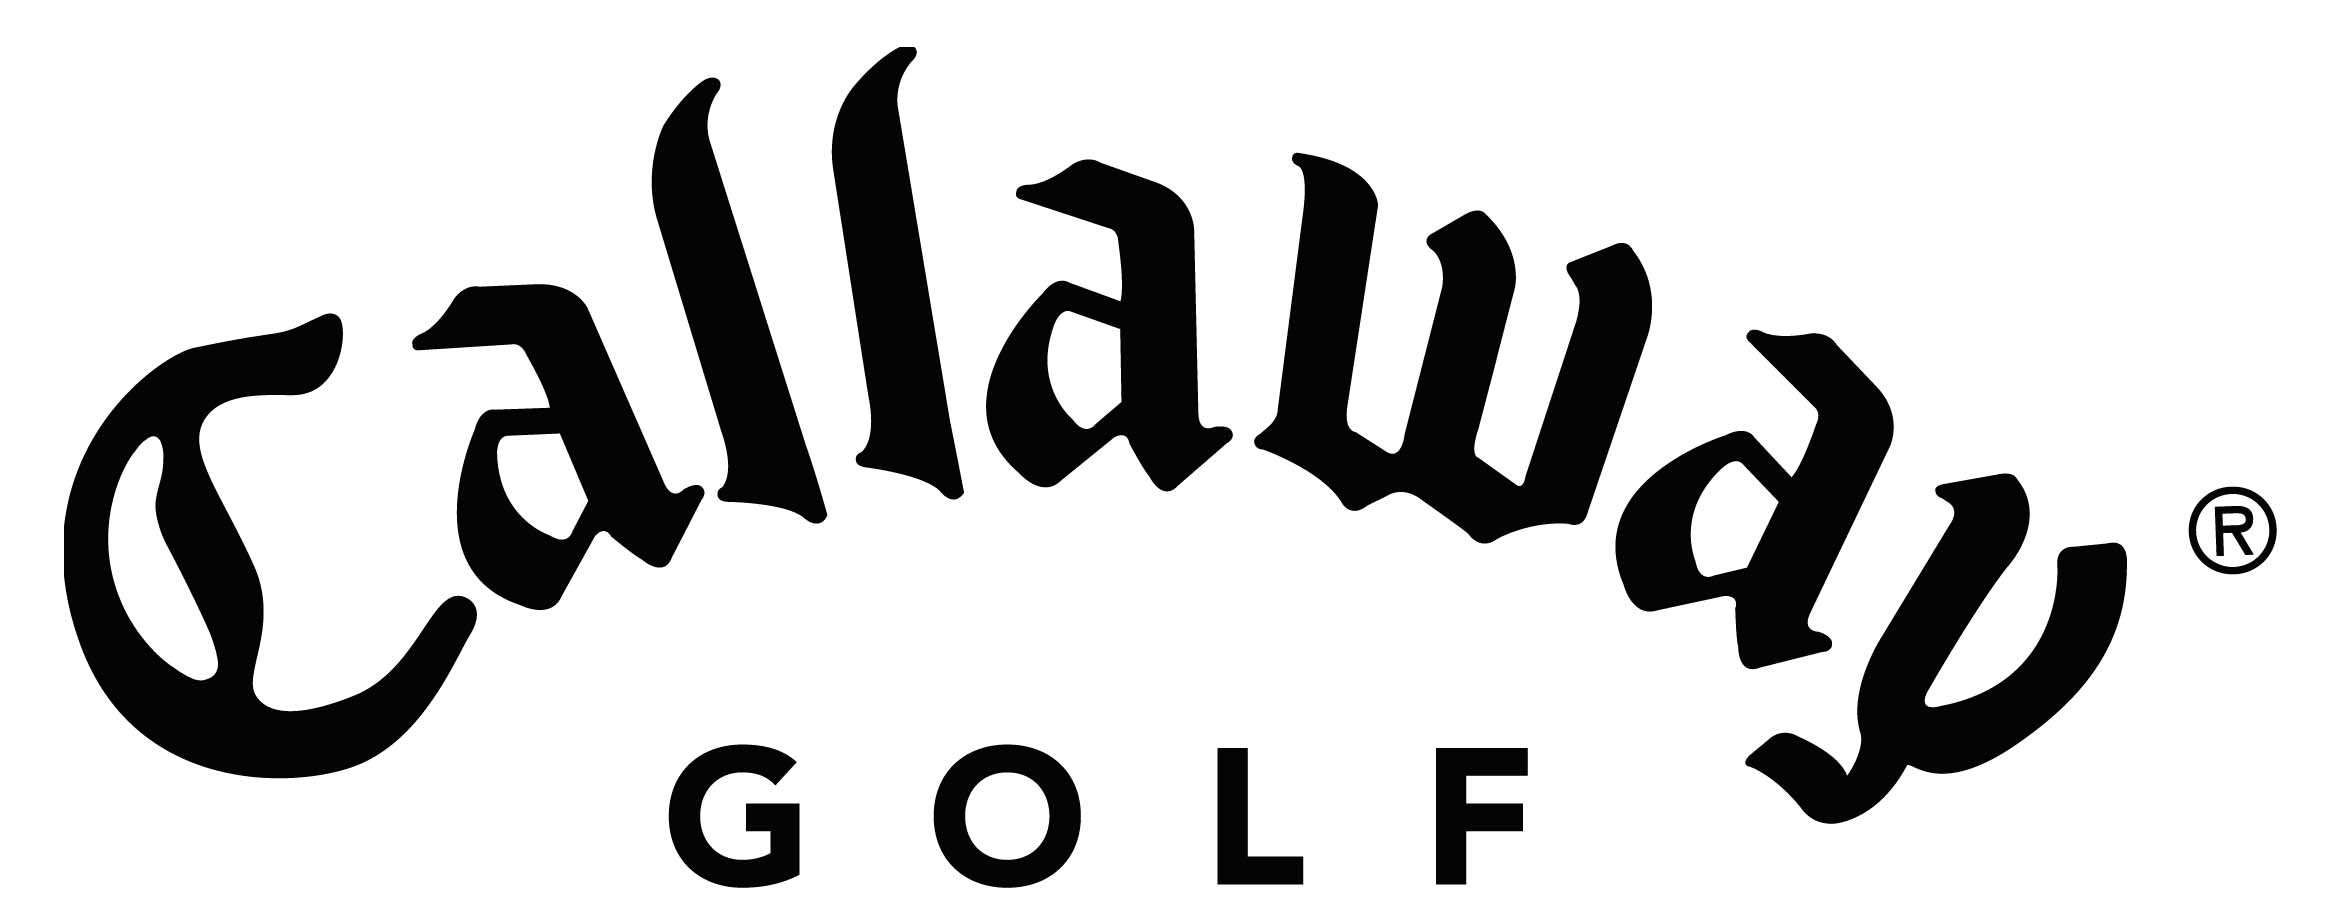 callaway-logo_84.jpg